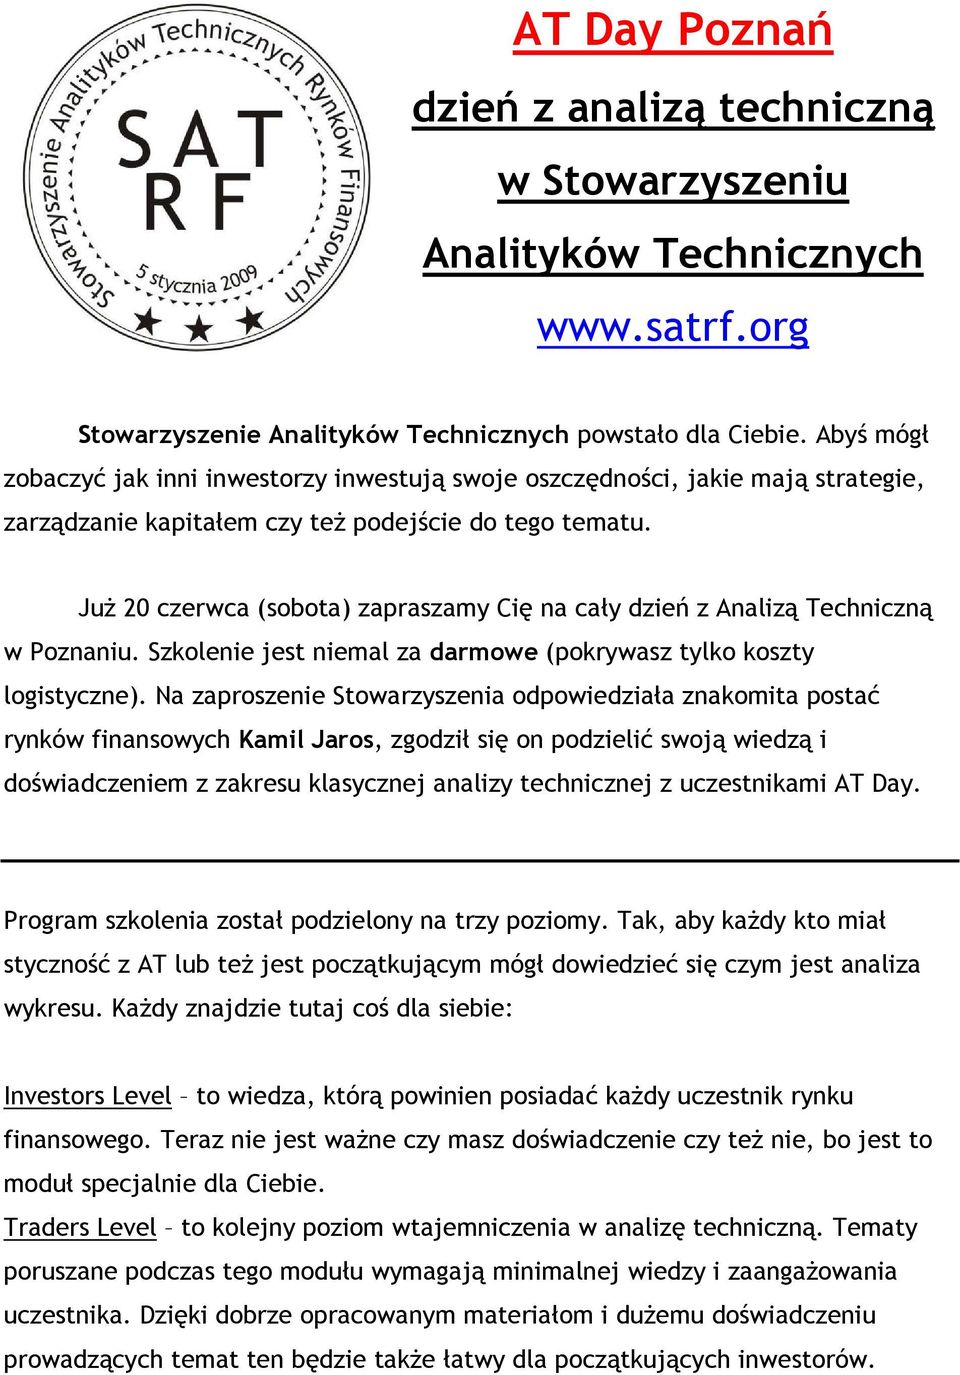 JuŜ 20 czerwca (sobota) zapraszamy Cię na cały dzień z Analizą Techniczną w Poznaniu. Szkolenie jest niemal za darmowe (pokrywasz tylko koszty logistyczne).